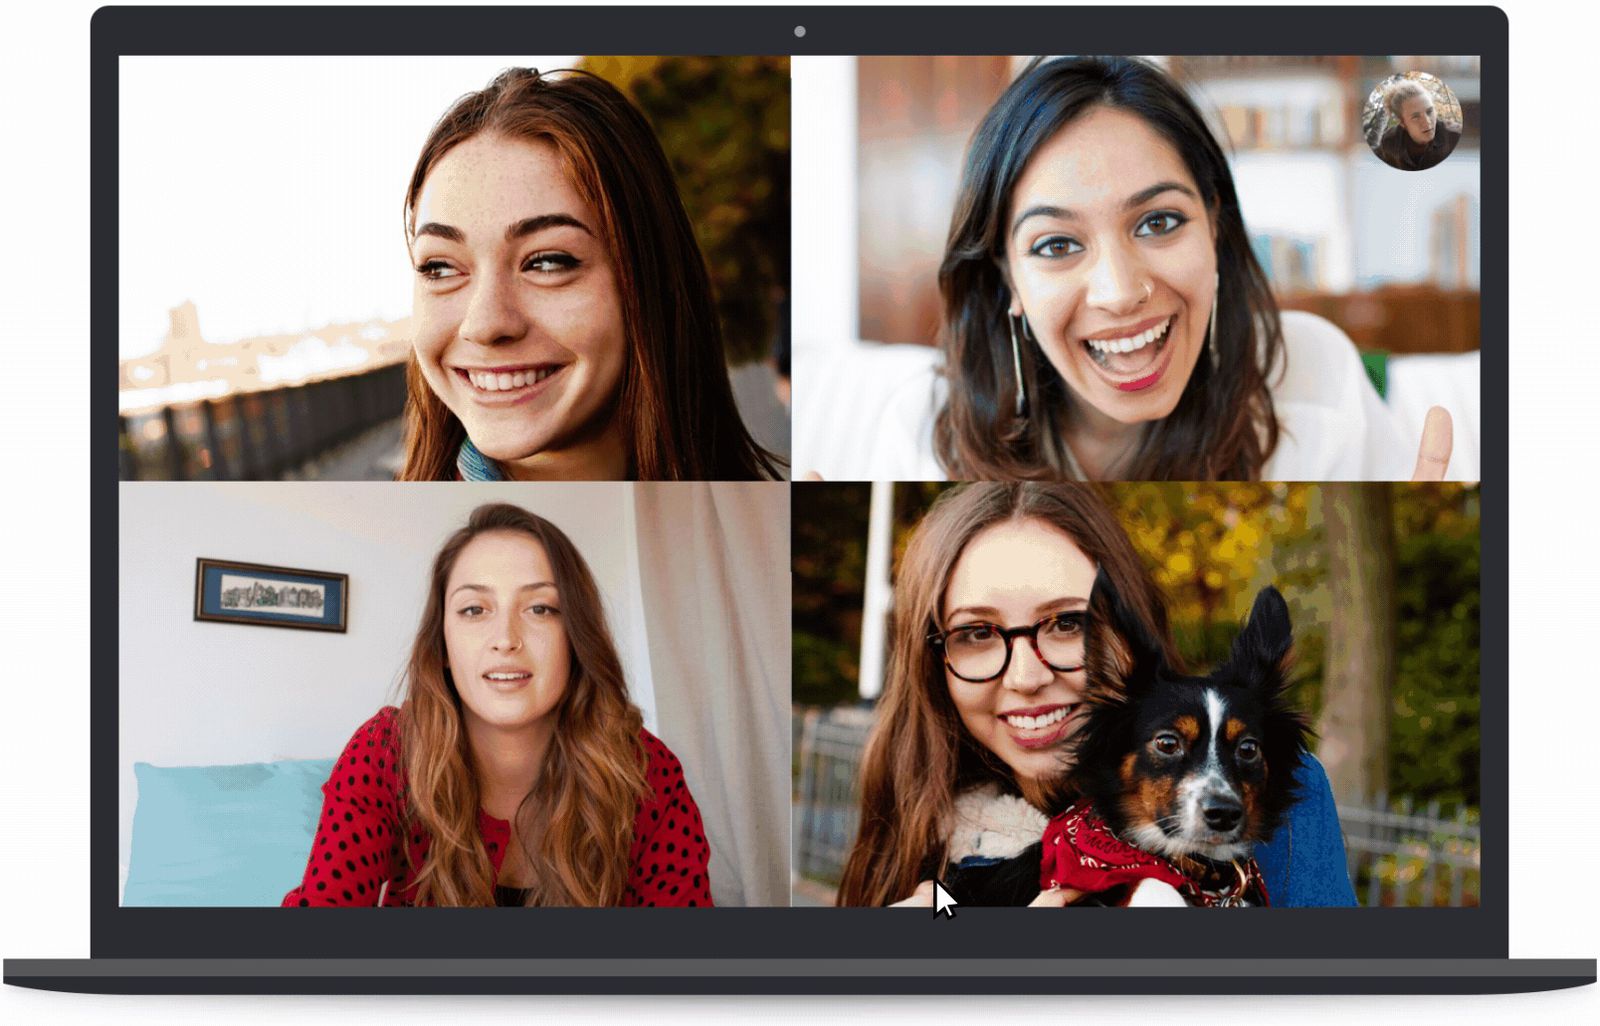 Nếu bạn là một người yêu thích Skype, hãy trải nghiệm tính năng mới nhất của ứng dụng này: làm mờ phông nền. Với tính năng này, bạn có thể bảo vệ sự riêng tư và hạn chế sự xâm nhập trong cuộc gọi video, tạo ra một khung hình độc đáo và chuyên nghiệp. Hãy xem hình ảnh liên quan để biết thêm chi tiết.